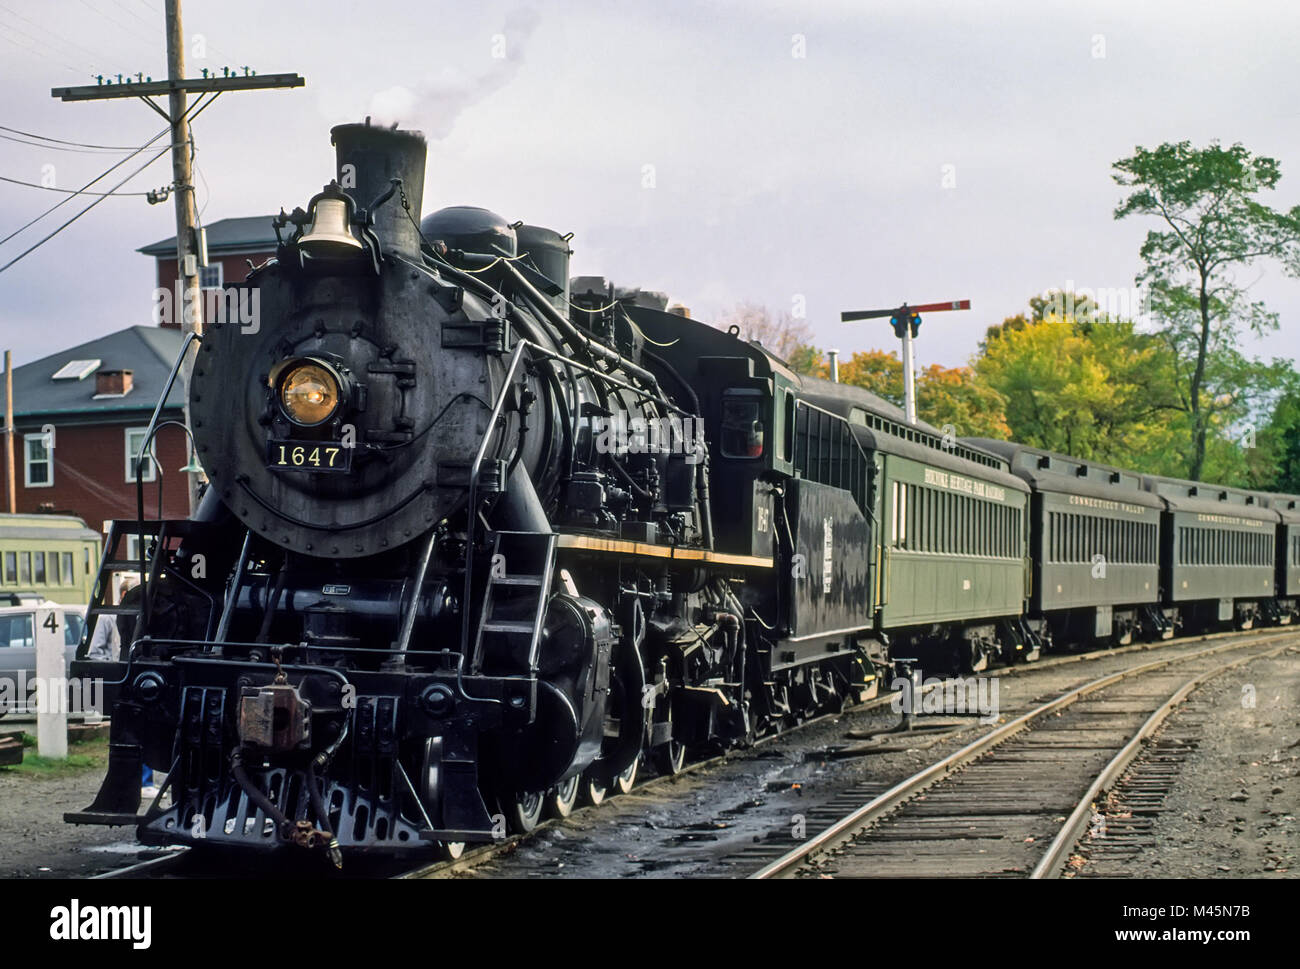 Valley Railroad 2-8-2 locomotive # 1647 train à vapeur au départ le dépôt de passagers dans l'Essex, CT, USA. Le train fait partie de la Essex Steam Train et Riv Banque D'Images